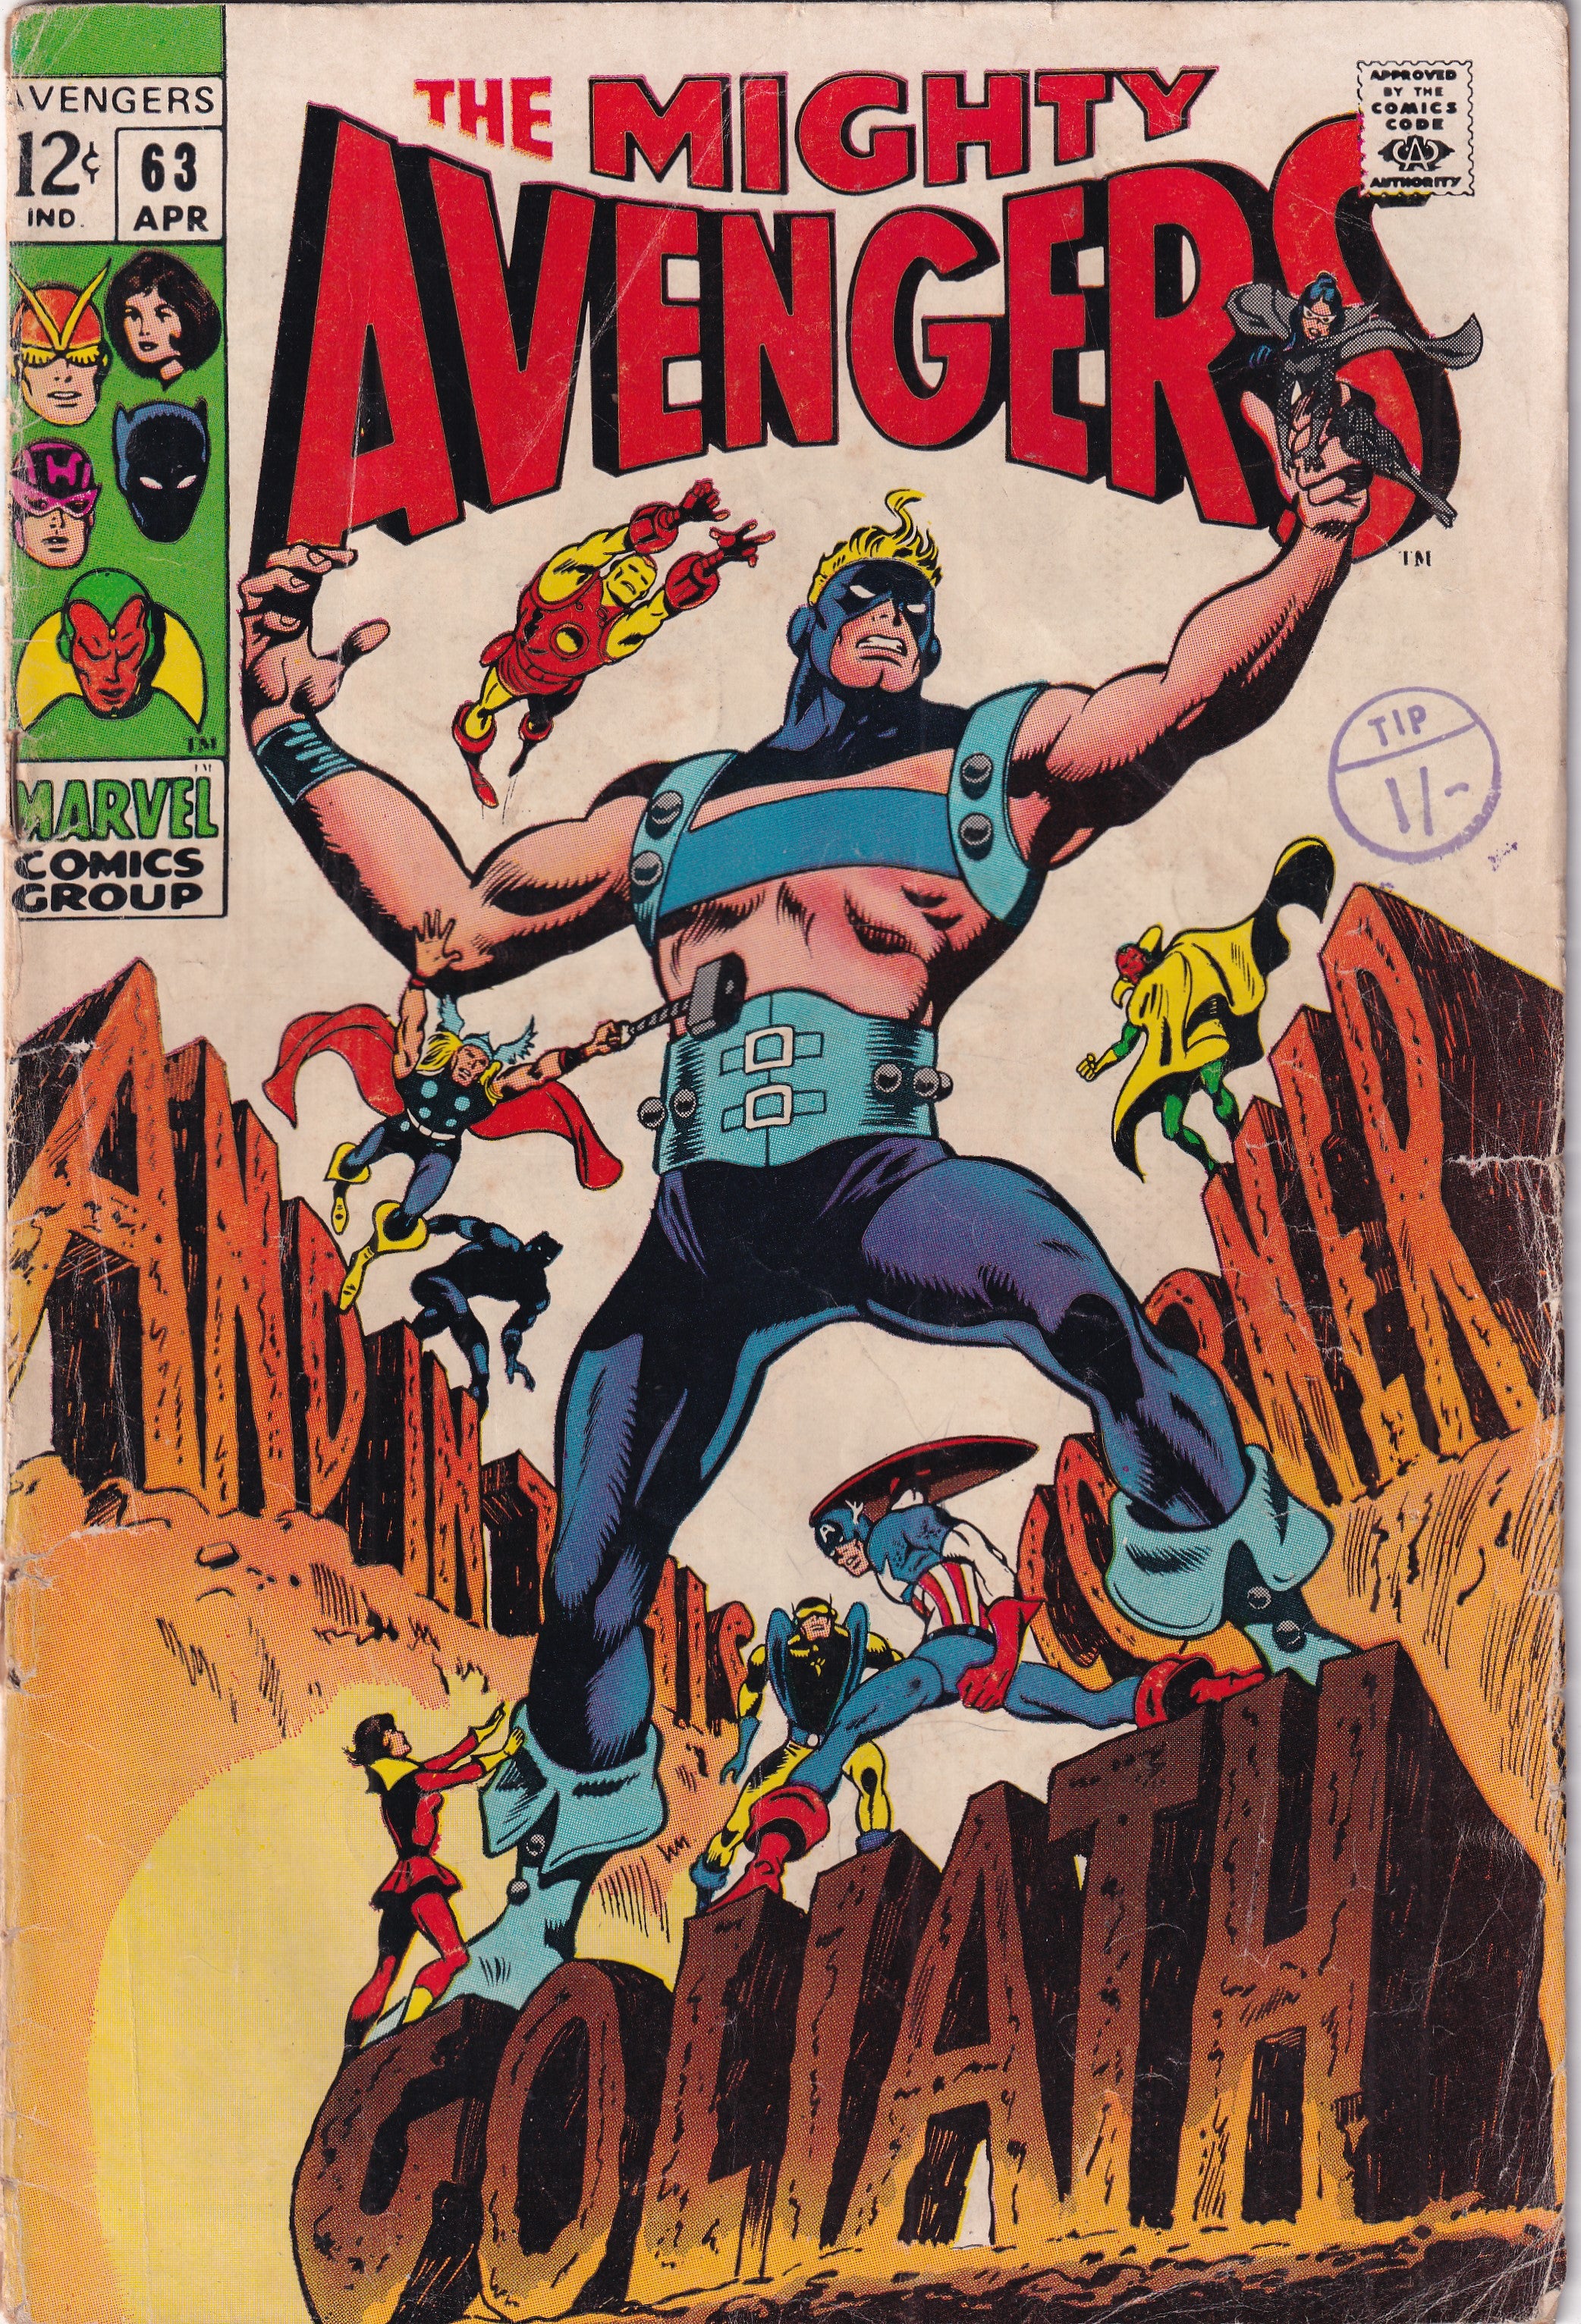 AVENGERS #63 - Slab City Comics 